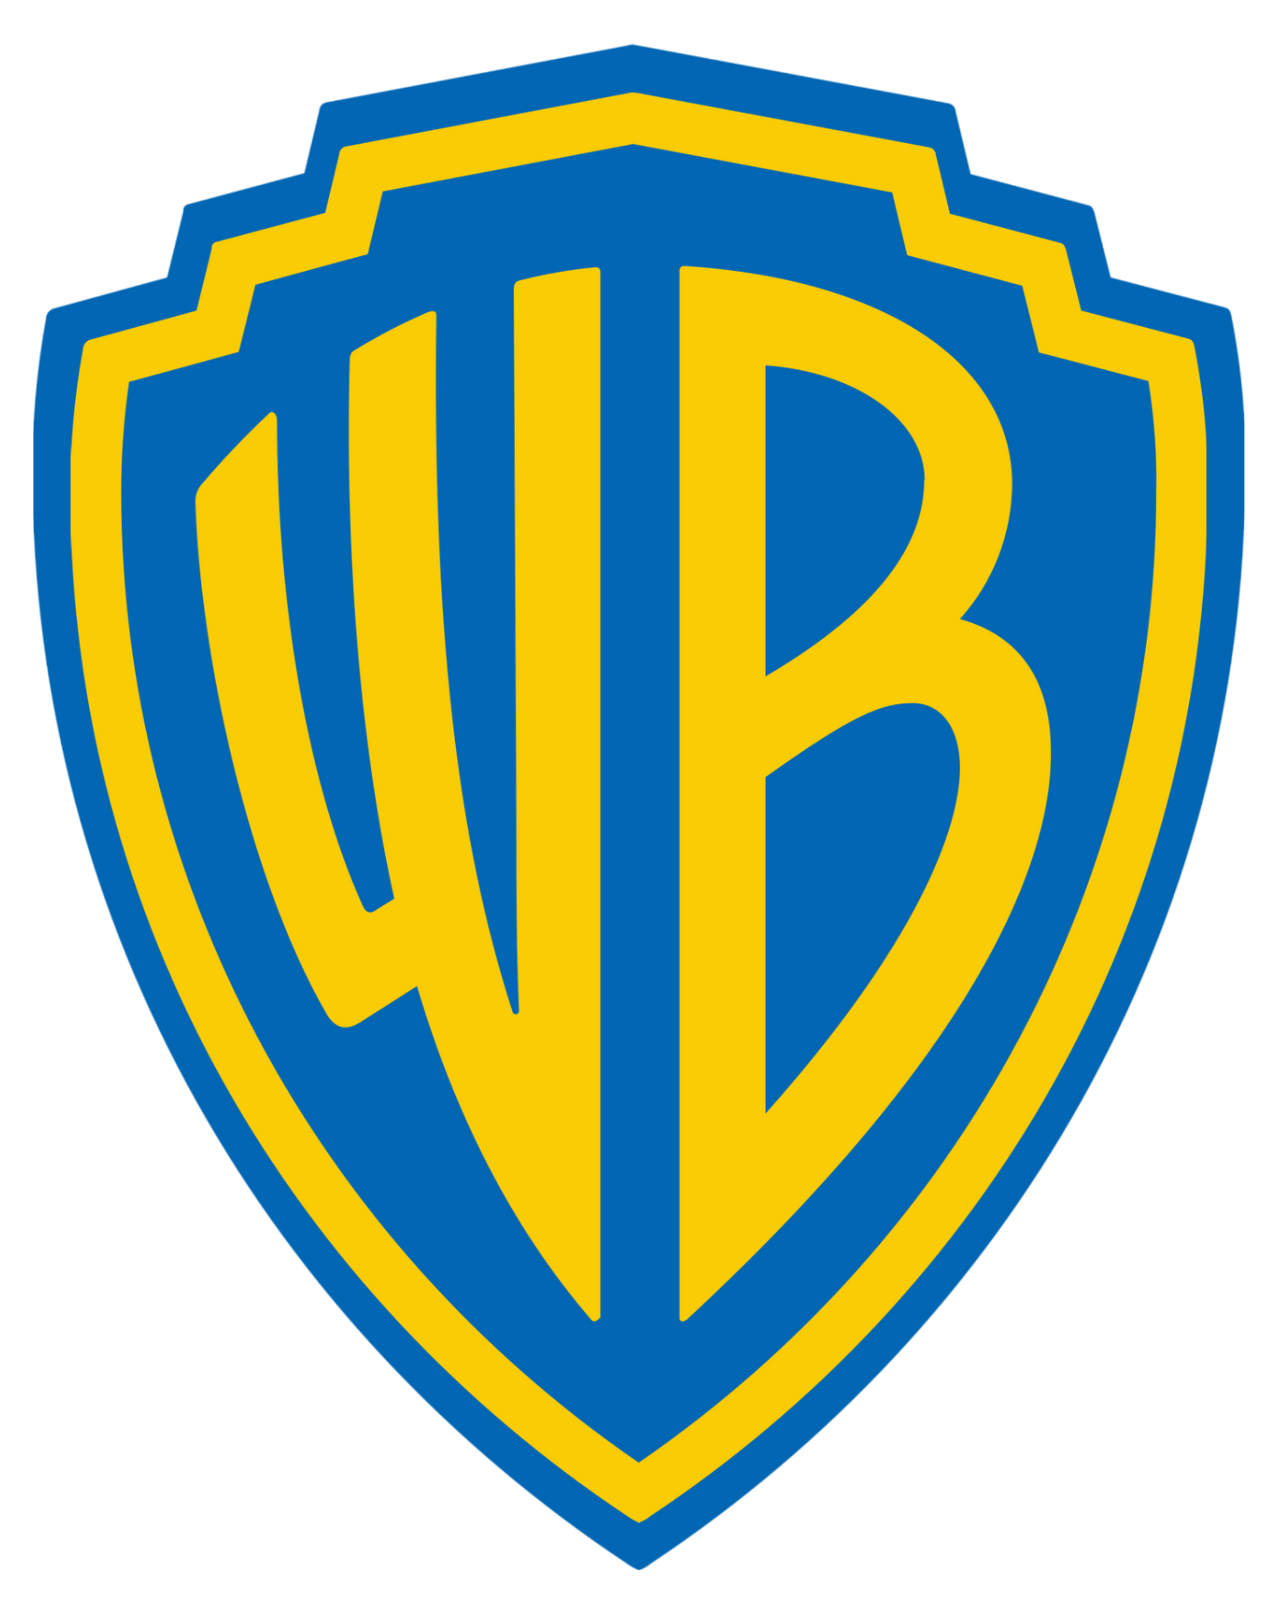 Warner Bros. by toon1990 on DeviantArt